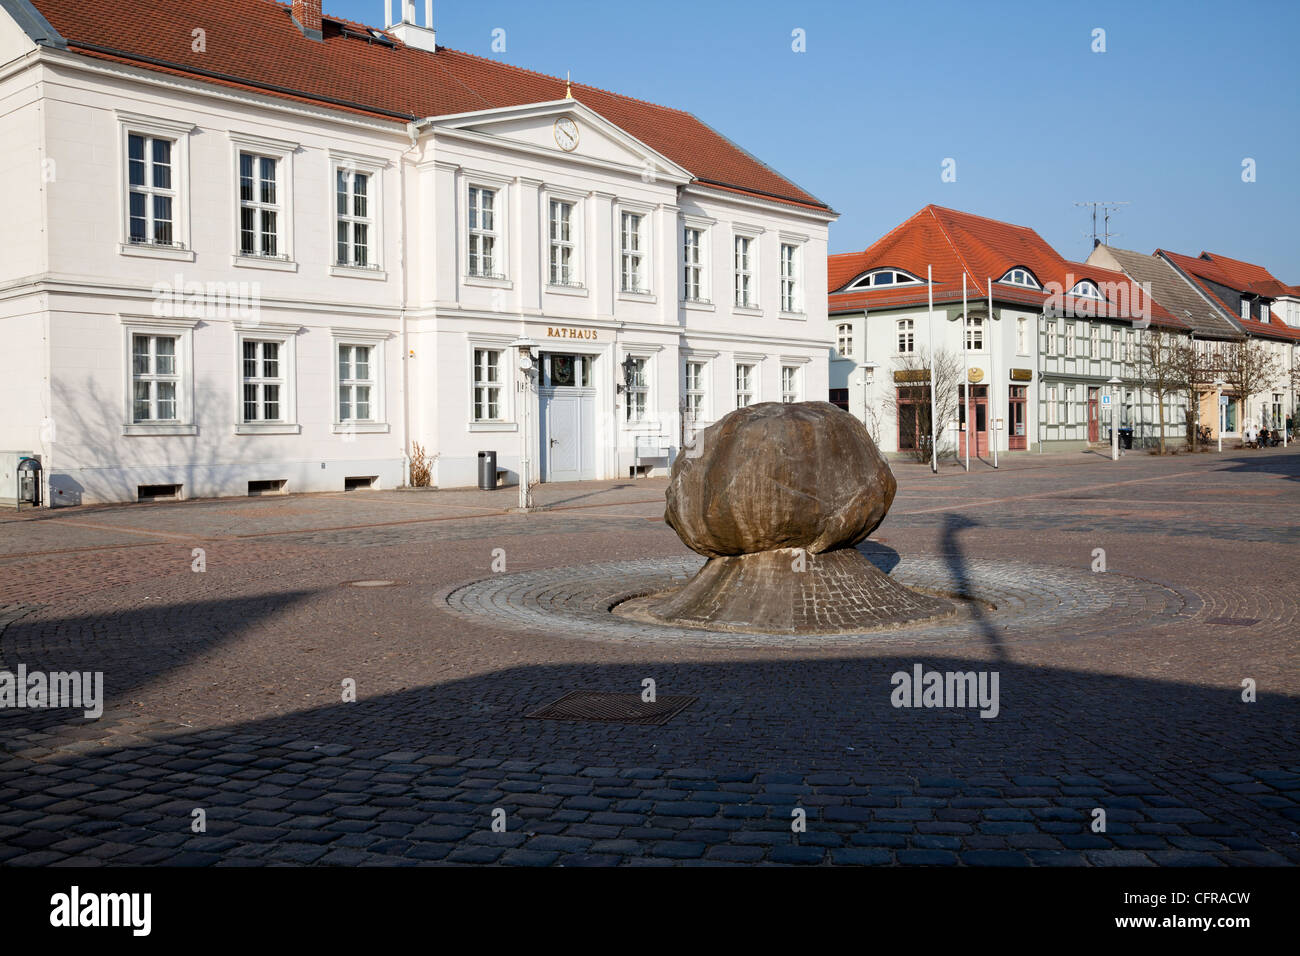 Rathaus und Marktstrasse, Pritzwalk, Brandenburg, Deutschland Stockfoto